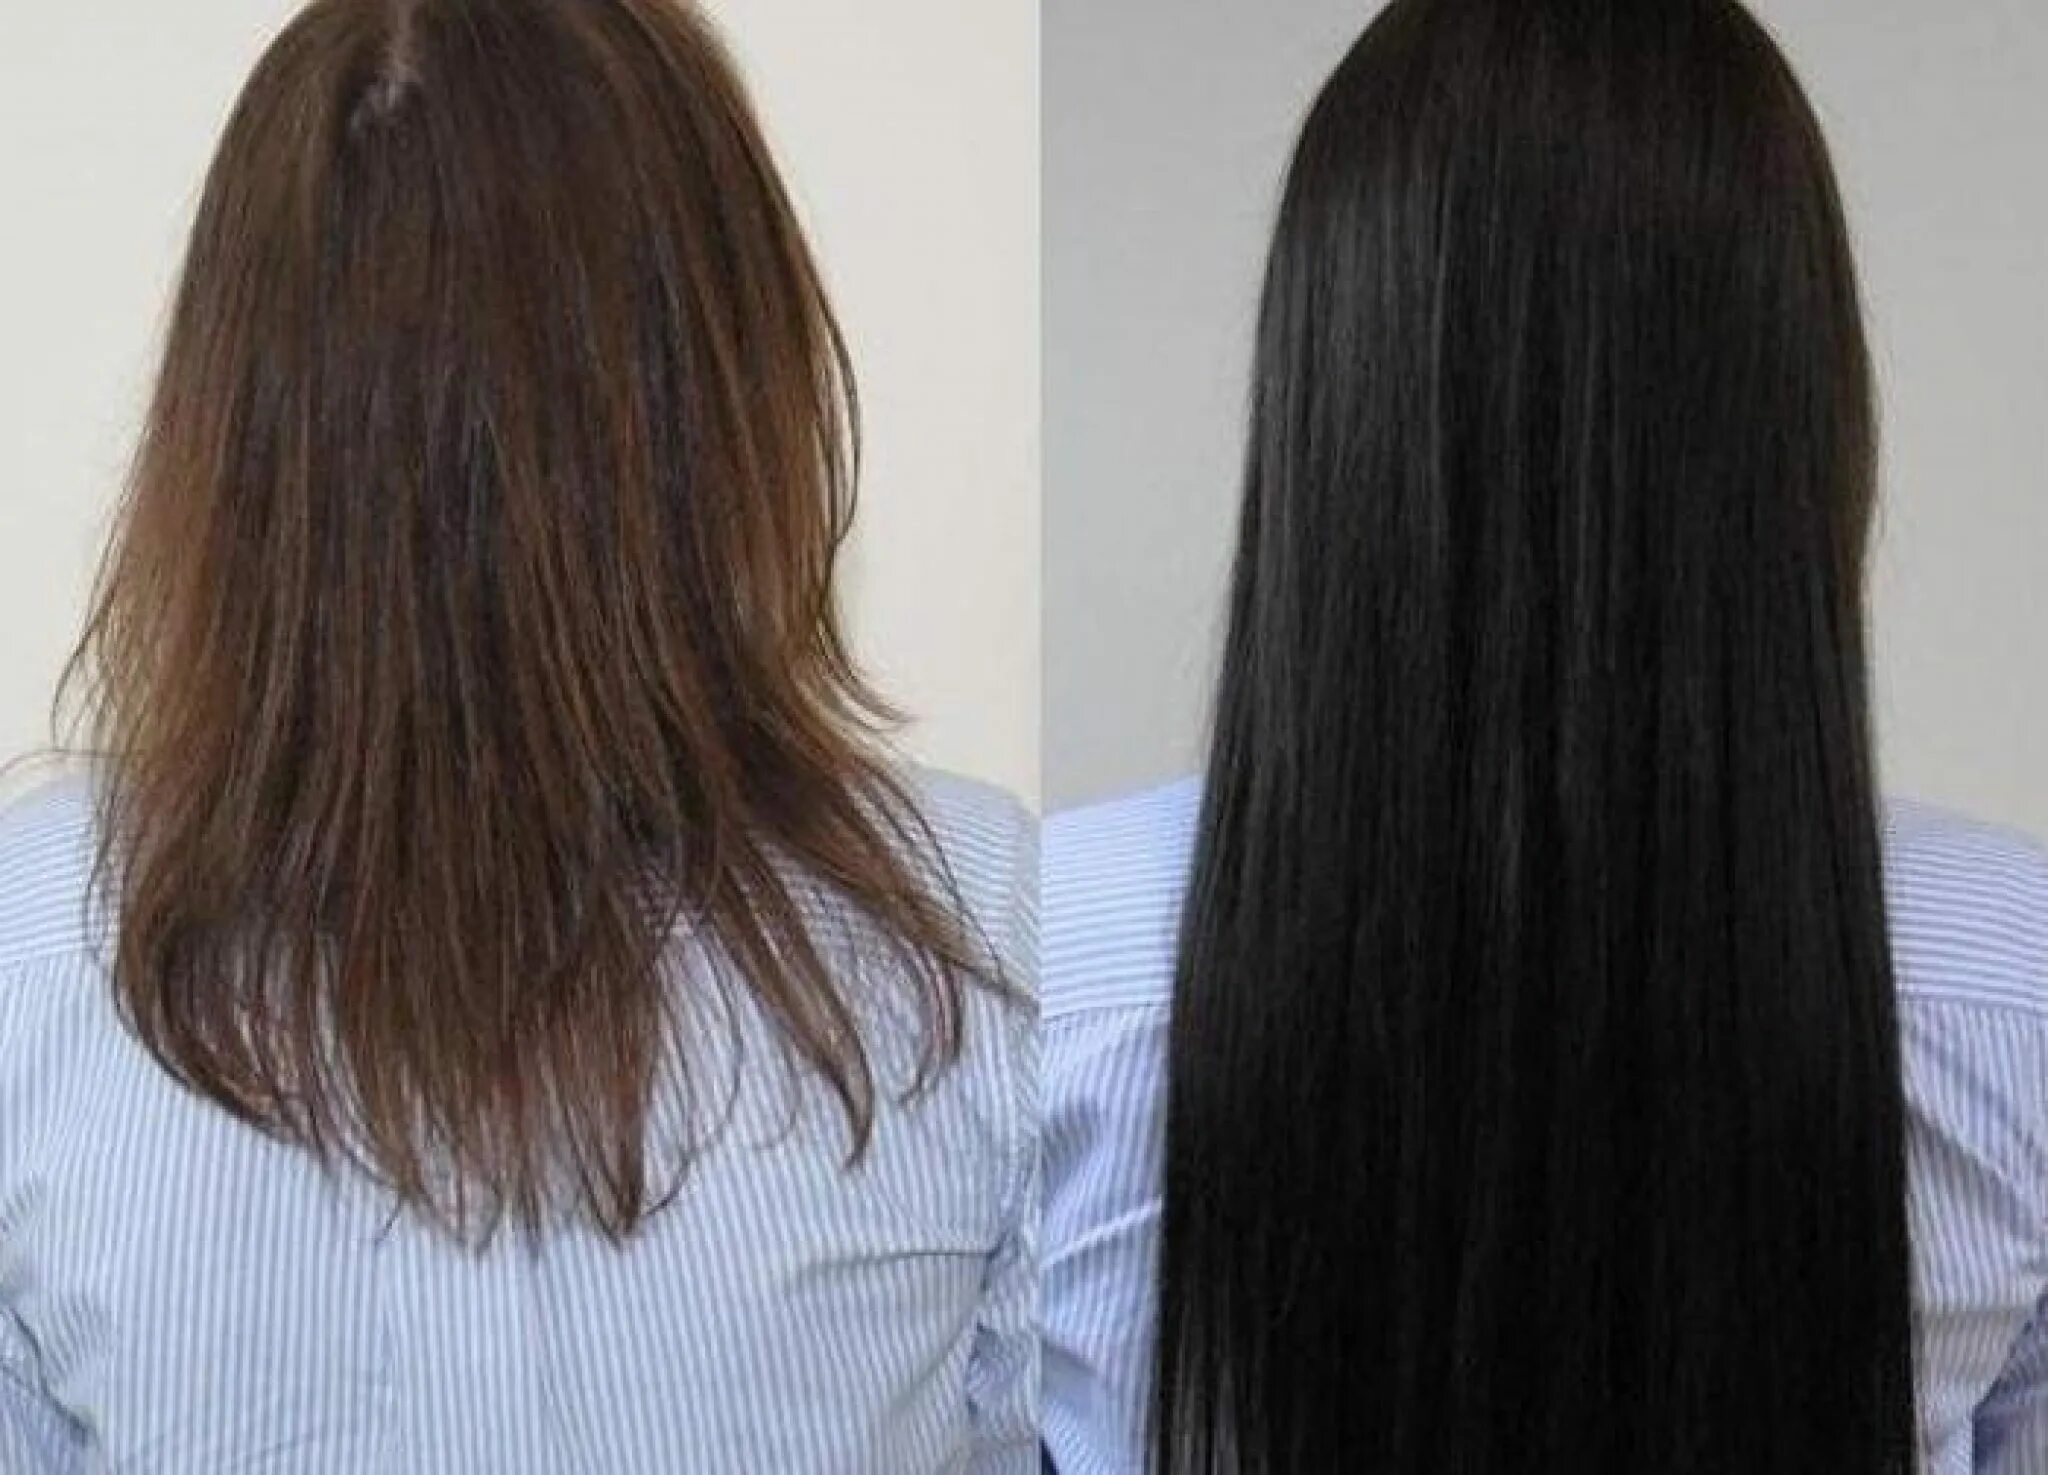 Волосы до после. Наращивание волос до и после. Нарощенные волосы до и после. Наращивание волос фото до и после. Наращивание для густоты